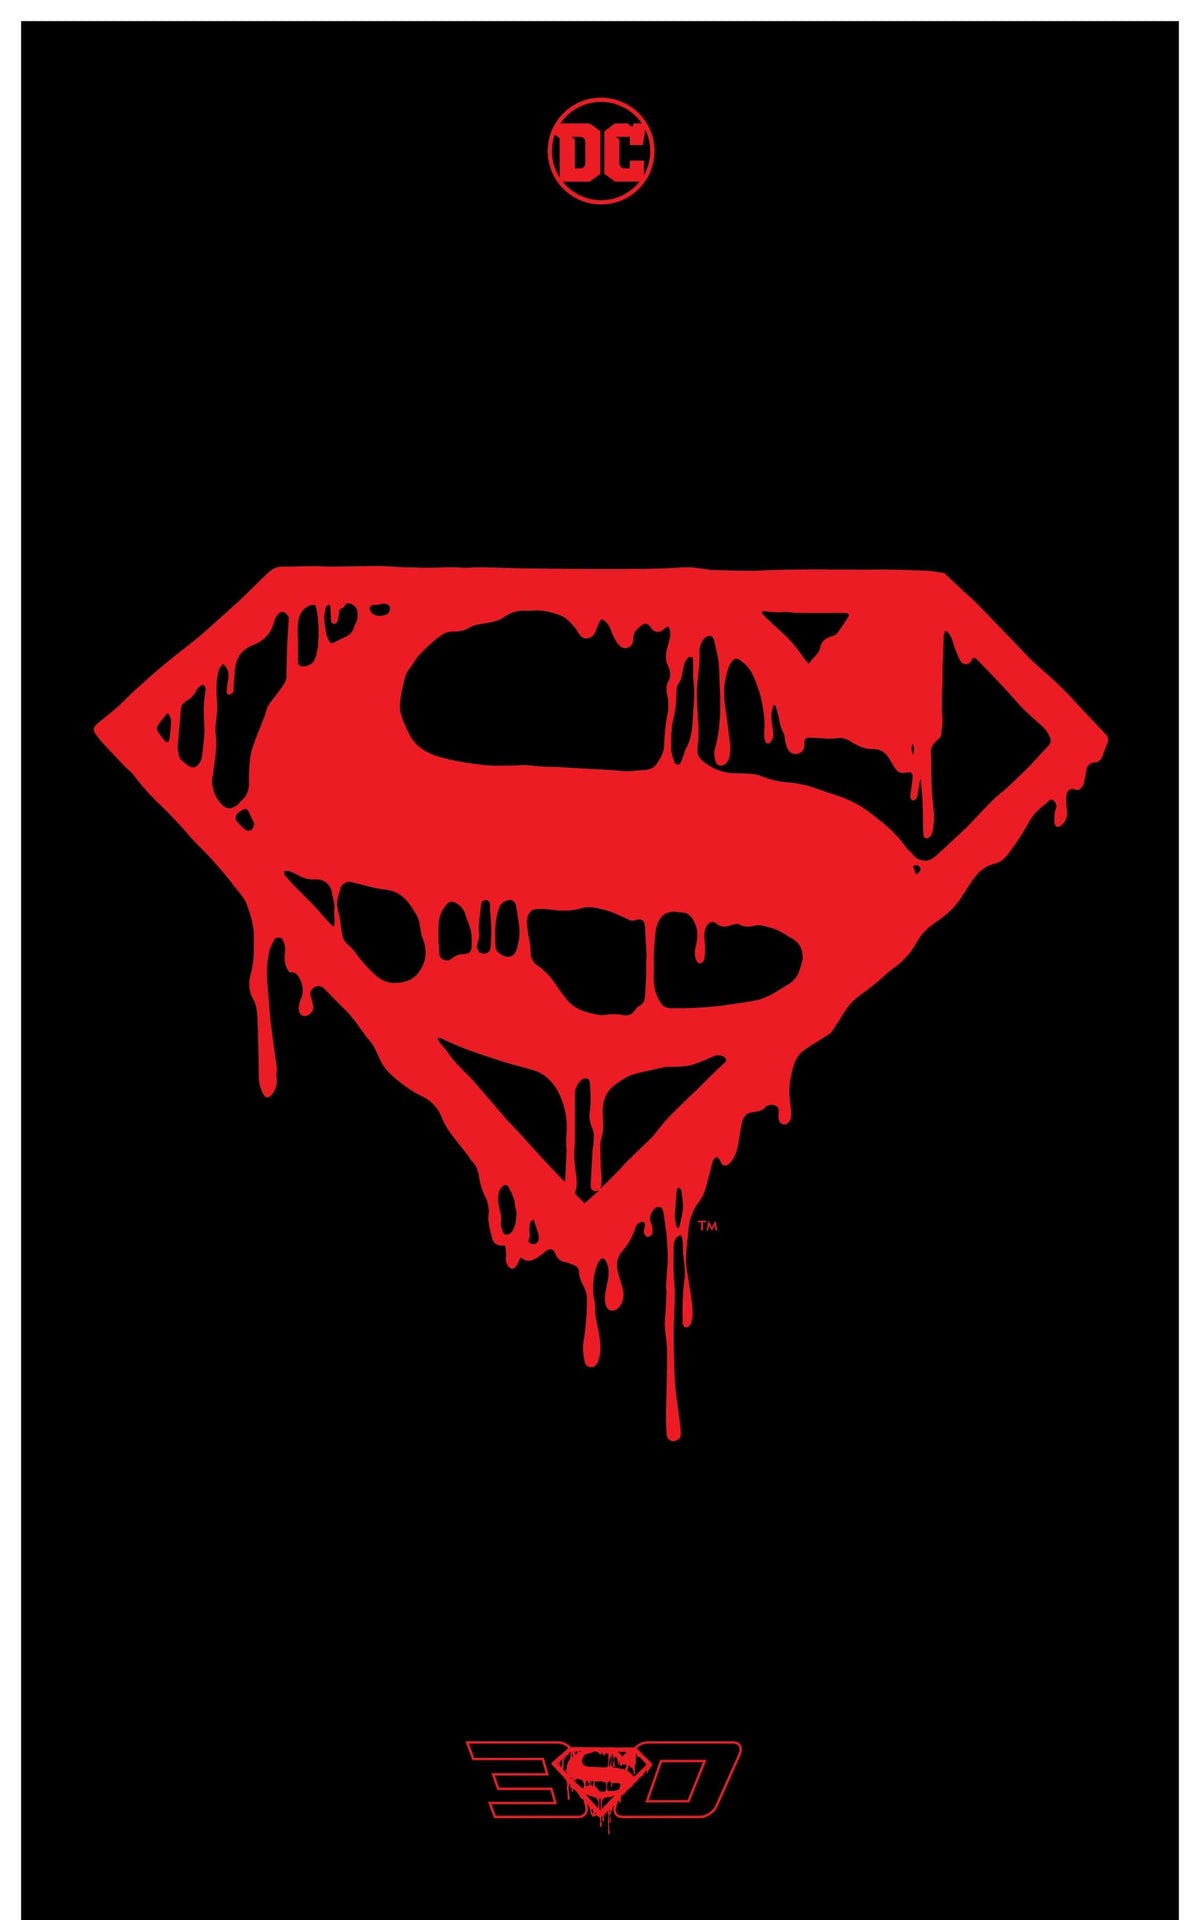 DEATH OF SUPERMAN 30TH ANNIVERSARY SPECIAL #1 (ONE-SHOT) CVR F MEMORIAL DAN JURGENS & BRETT BREEDING PREMIUM POLYBAG VAR - Third Eye